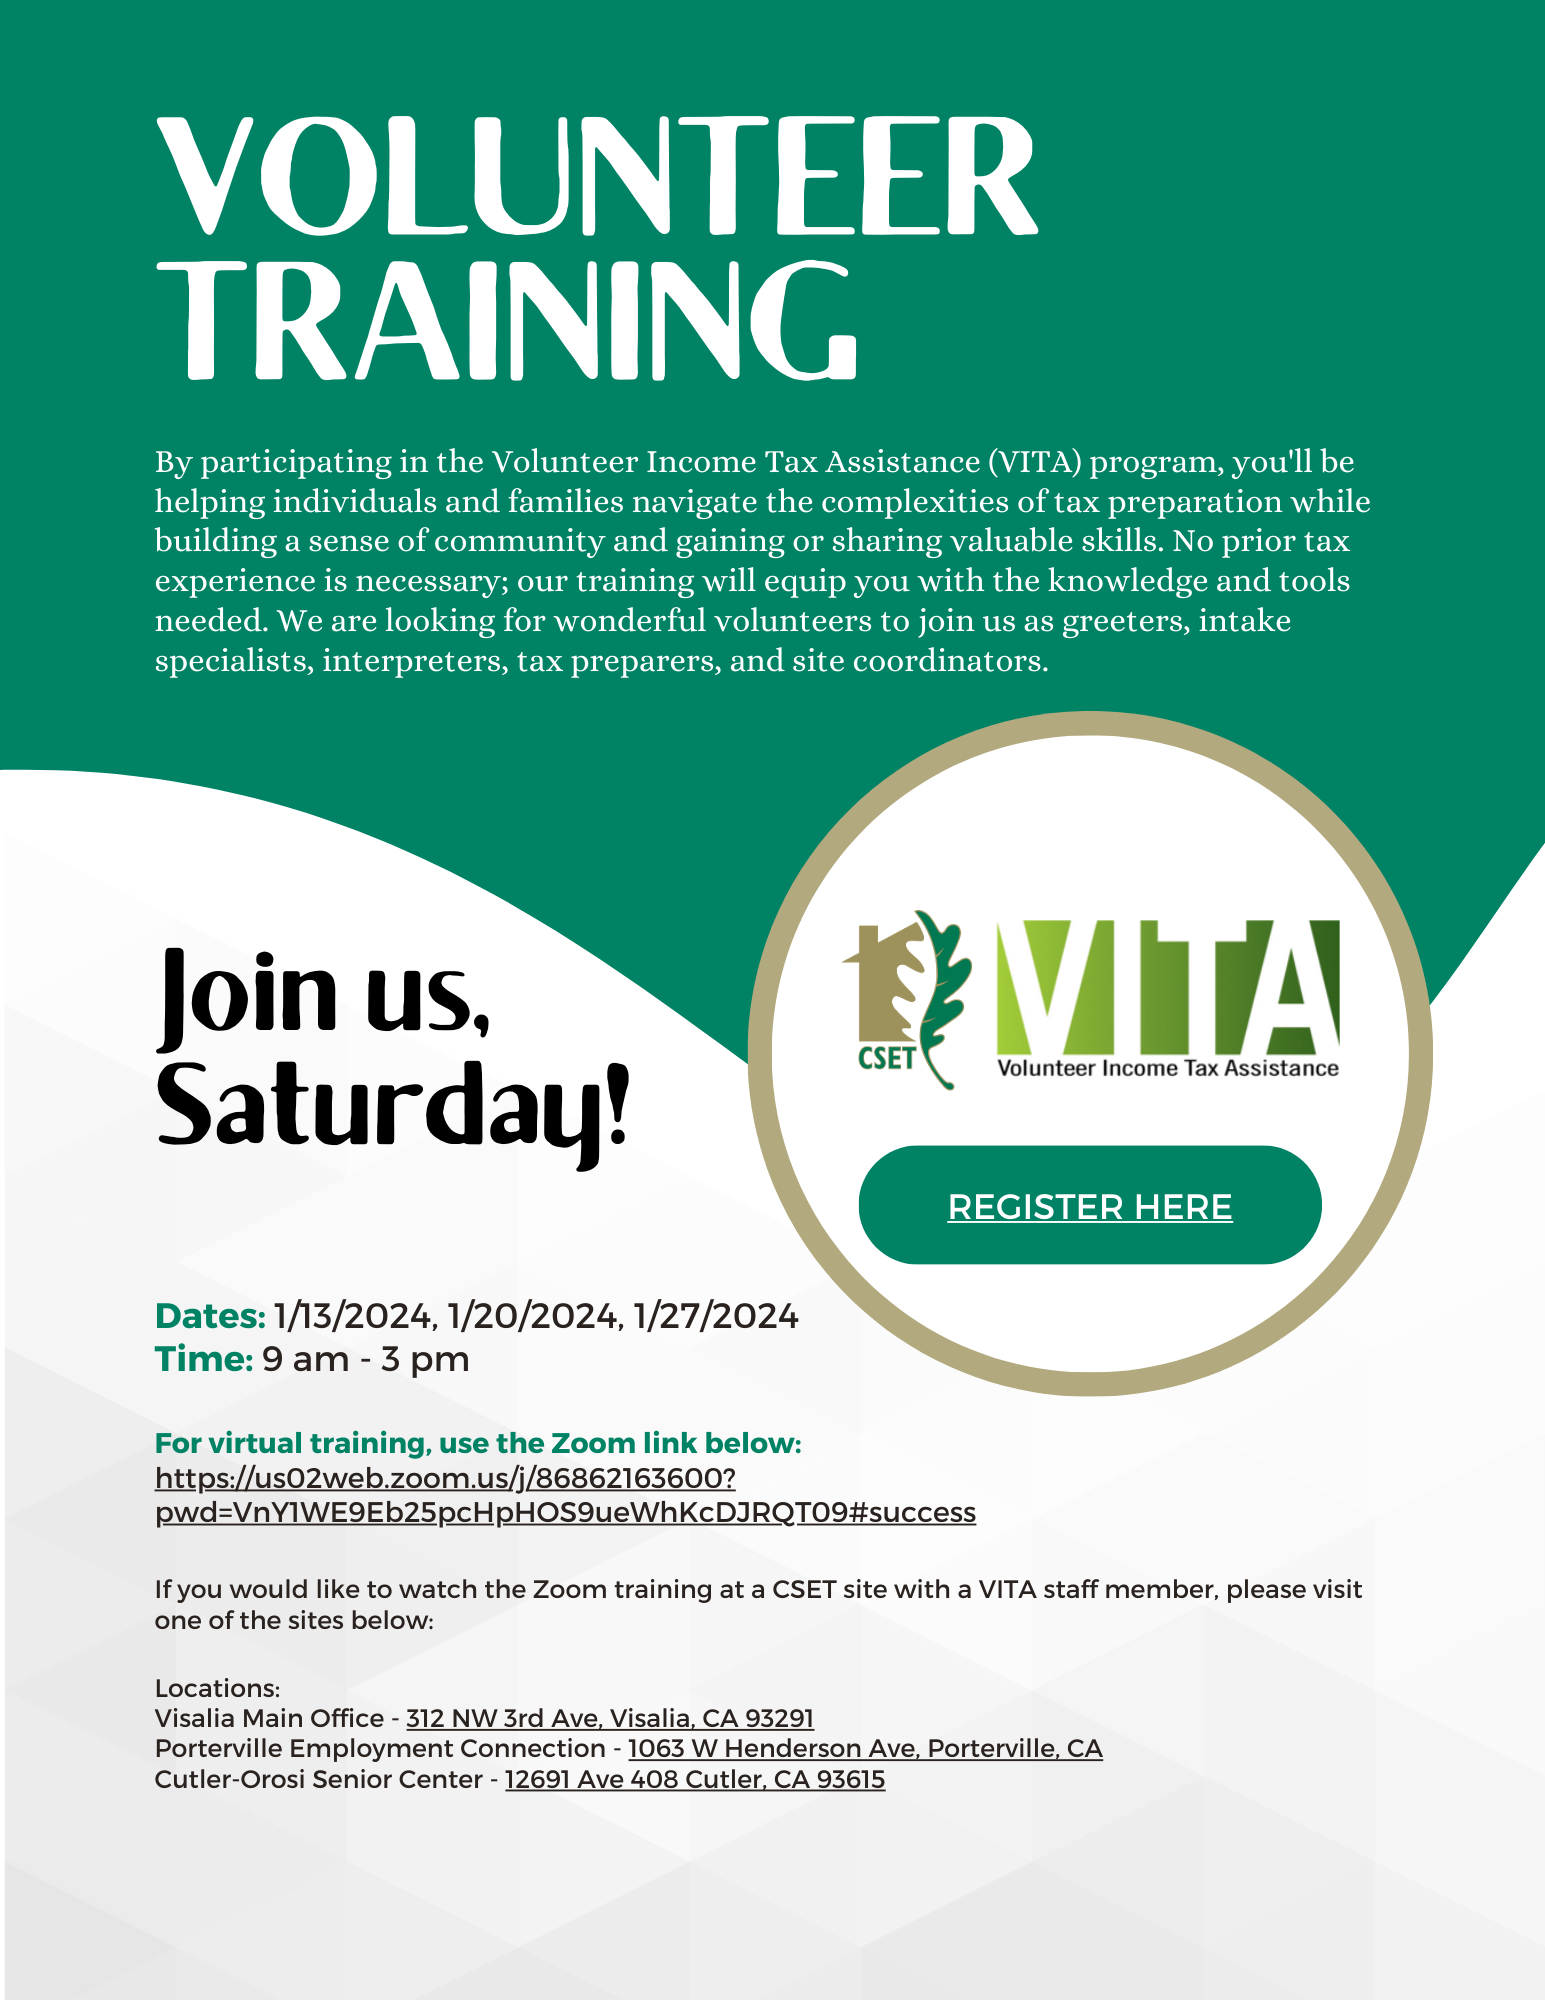 VITA Volunteer Training Flyer 2024 (English).png